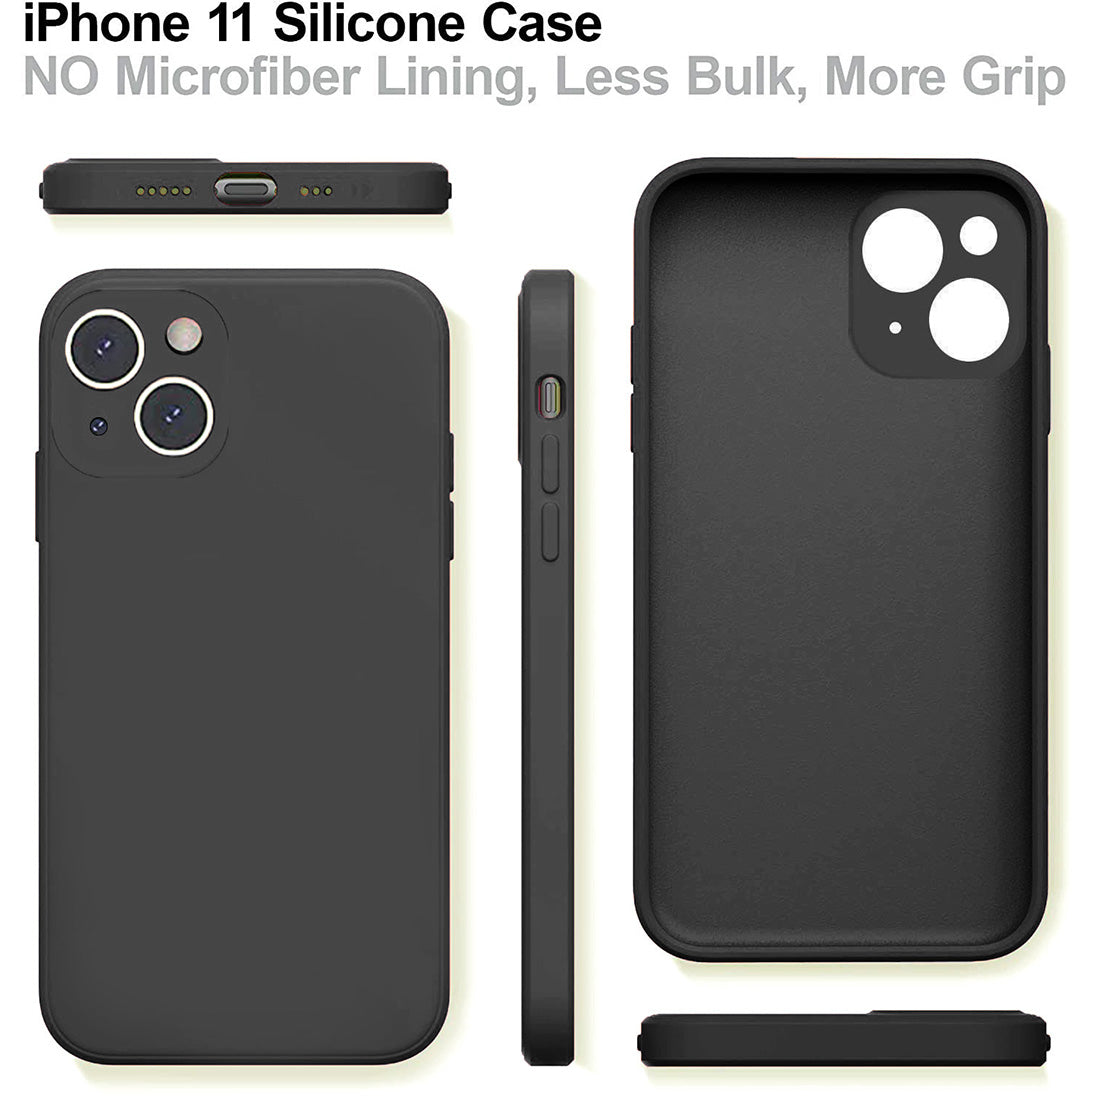 Liquid Silicone Case for Apple iPhone 13